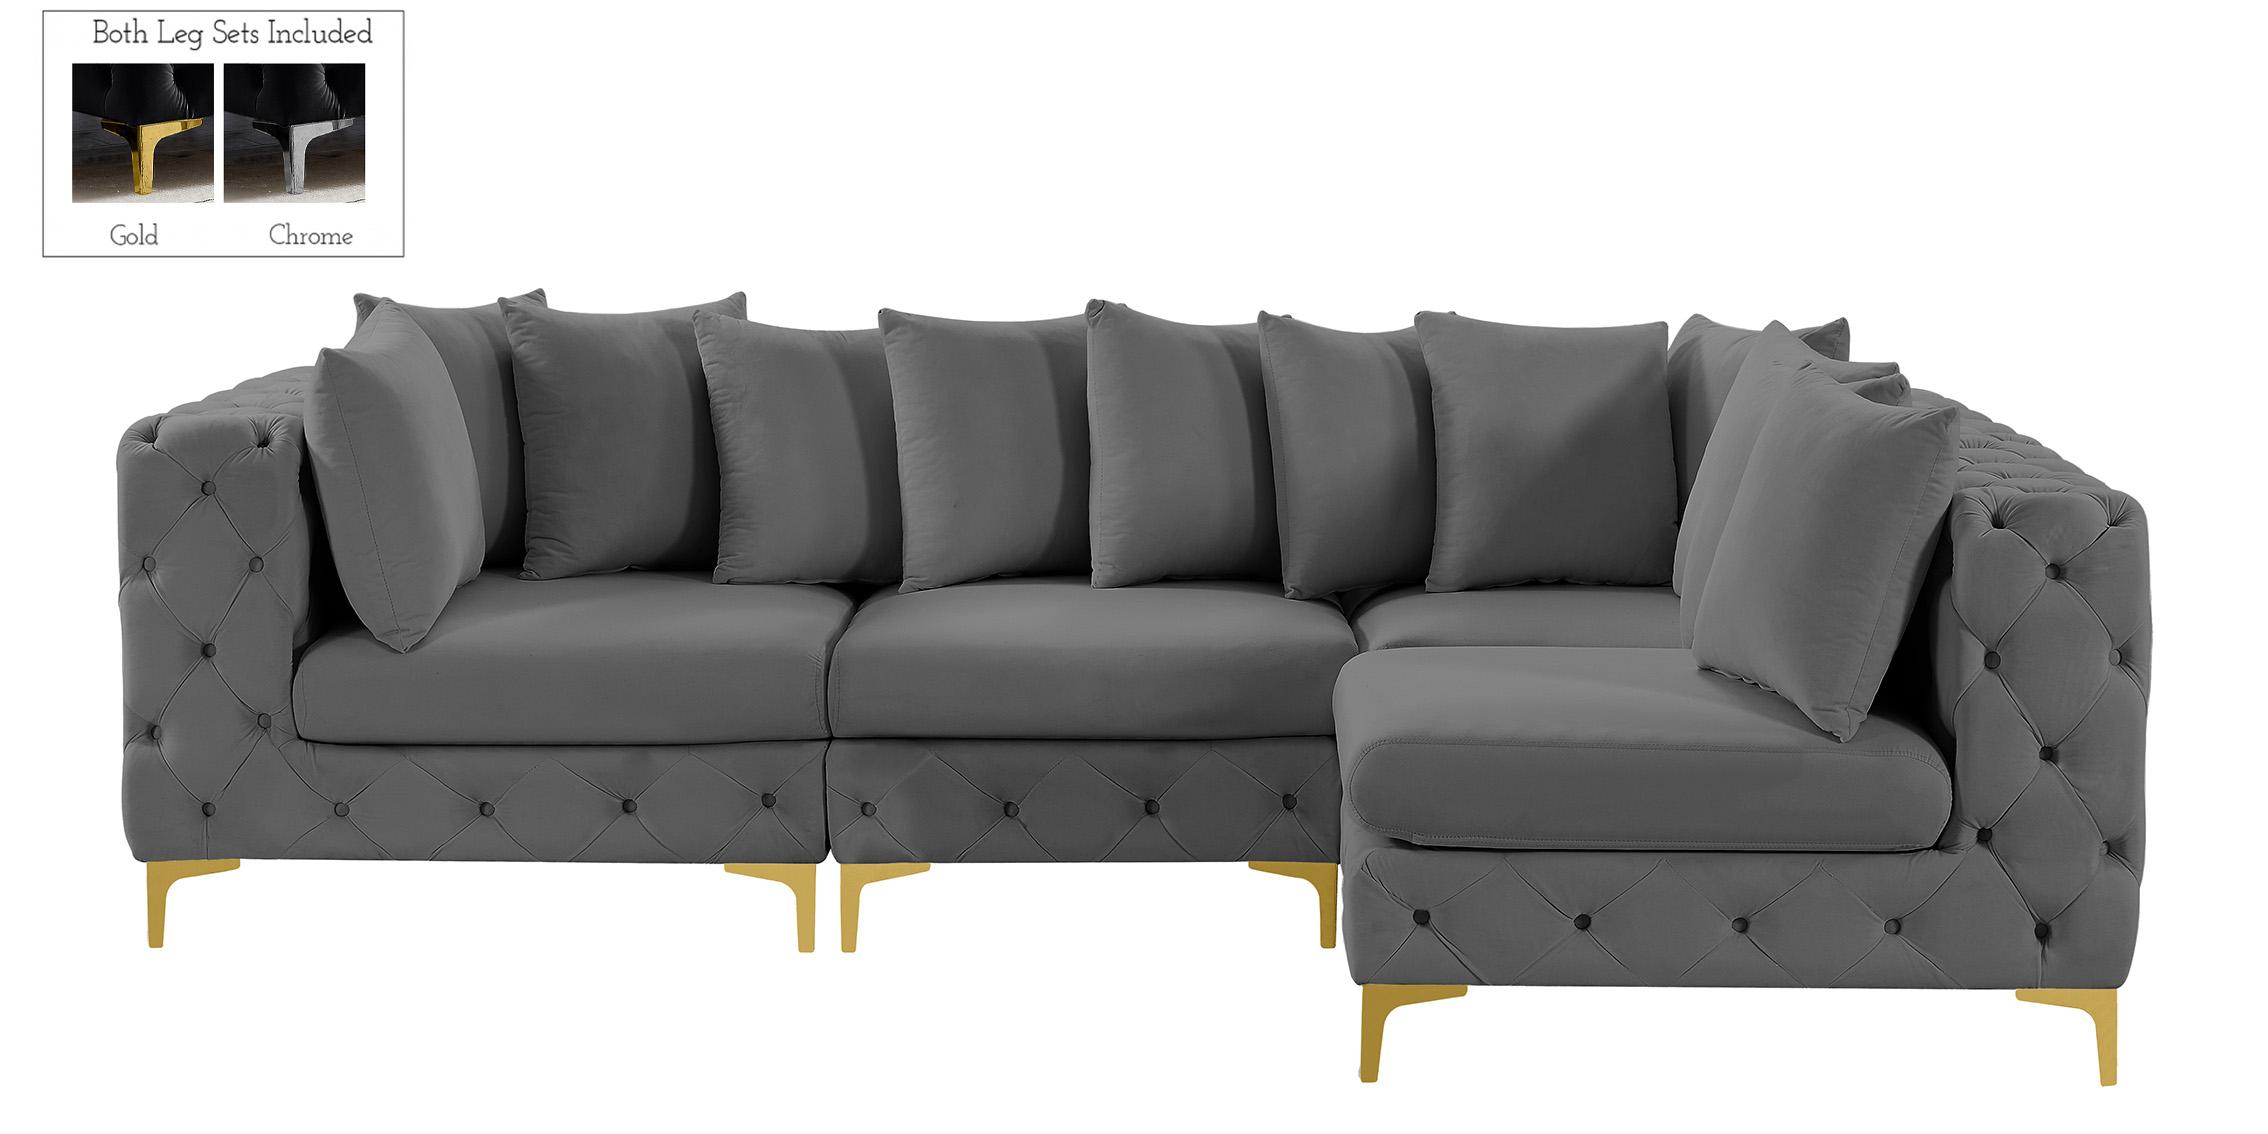 

    
686Grey-Sec4A Meridian Furniture Modular Sectional Sofa
